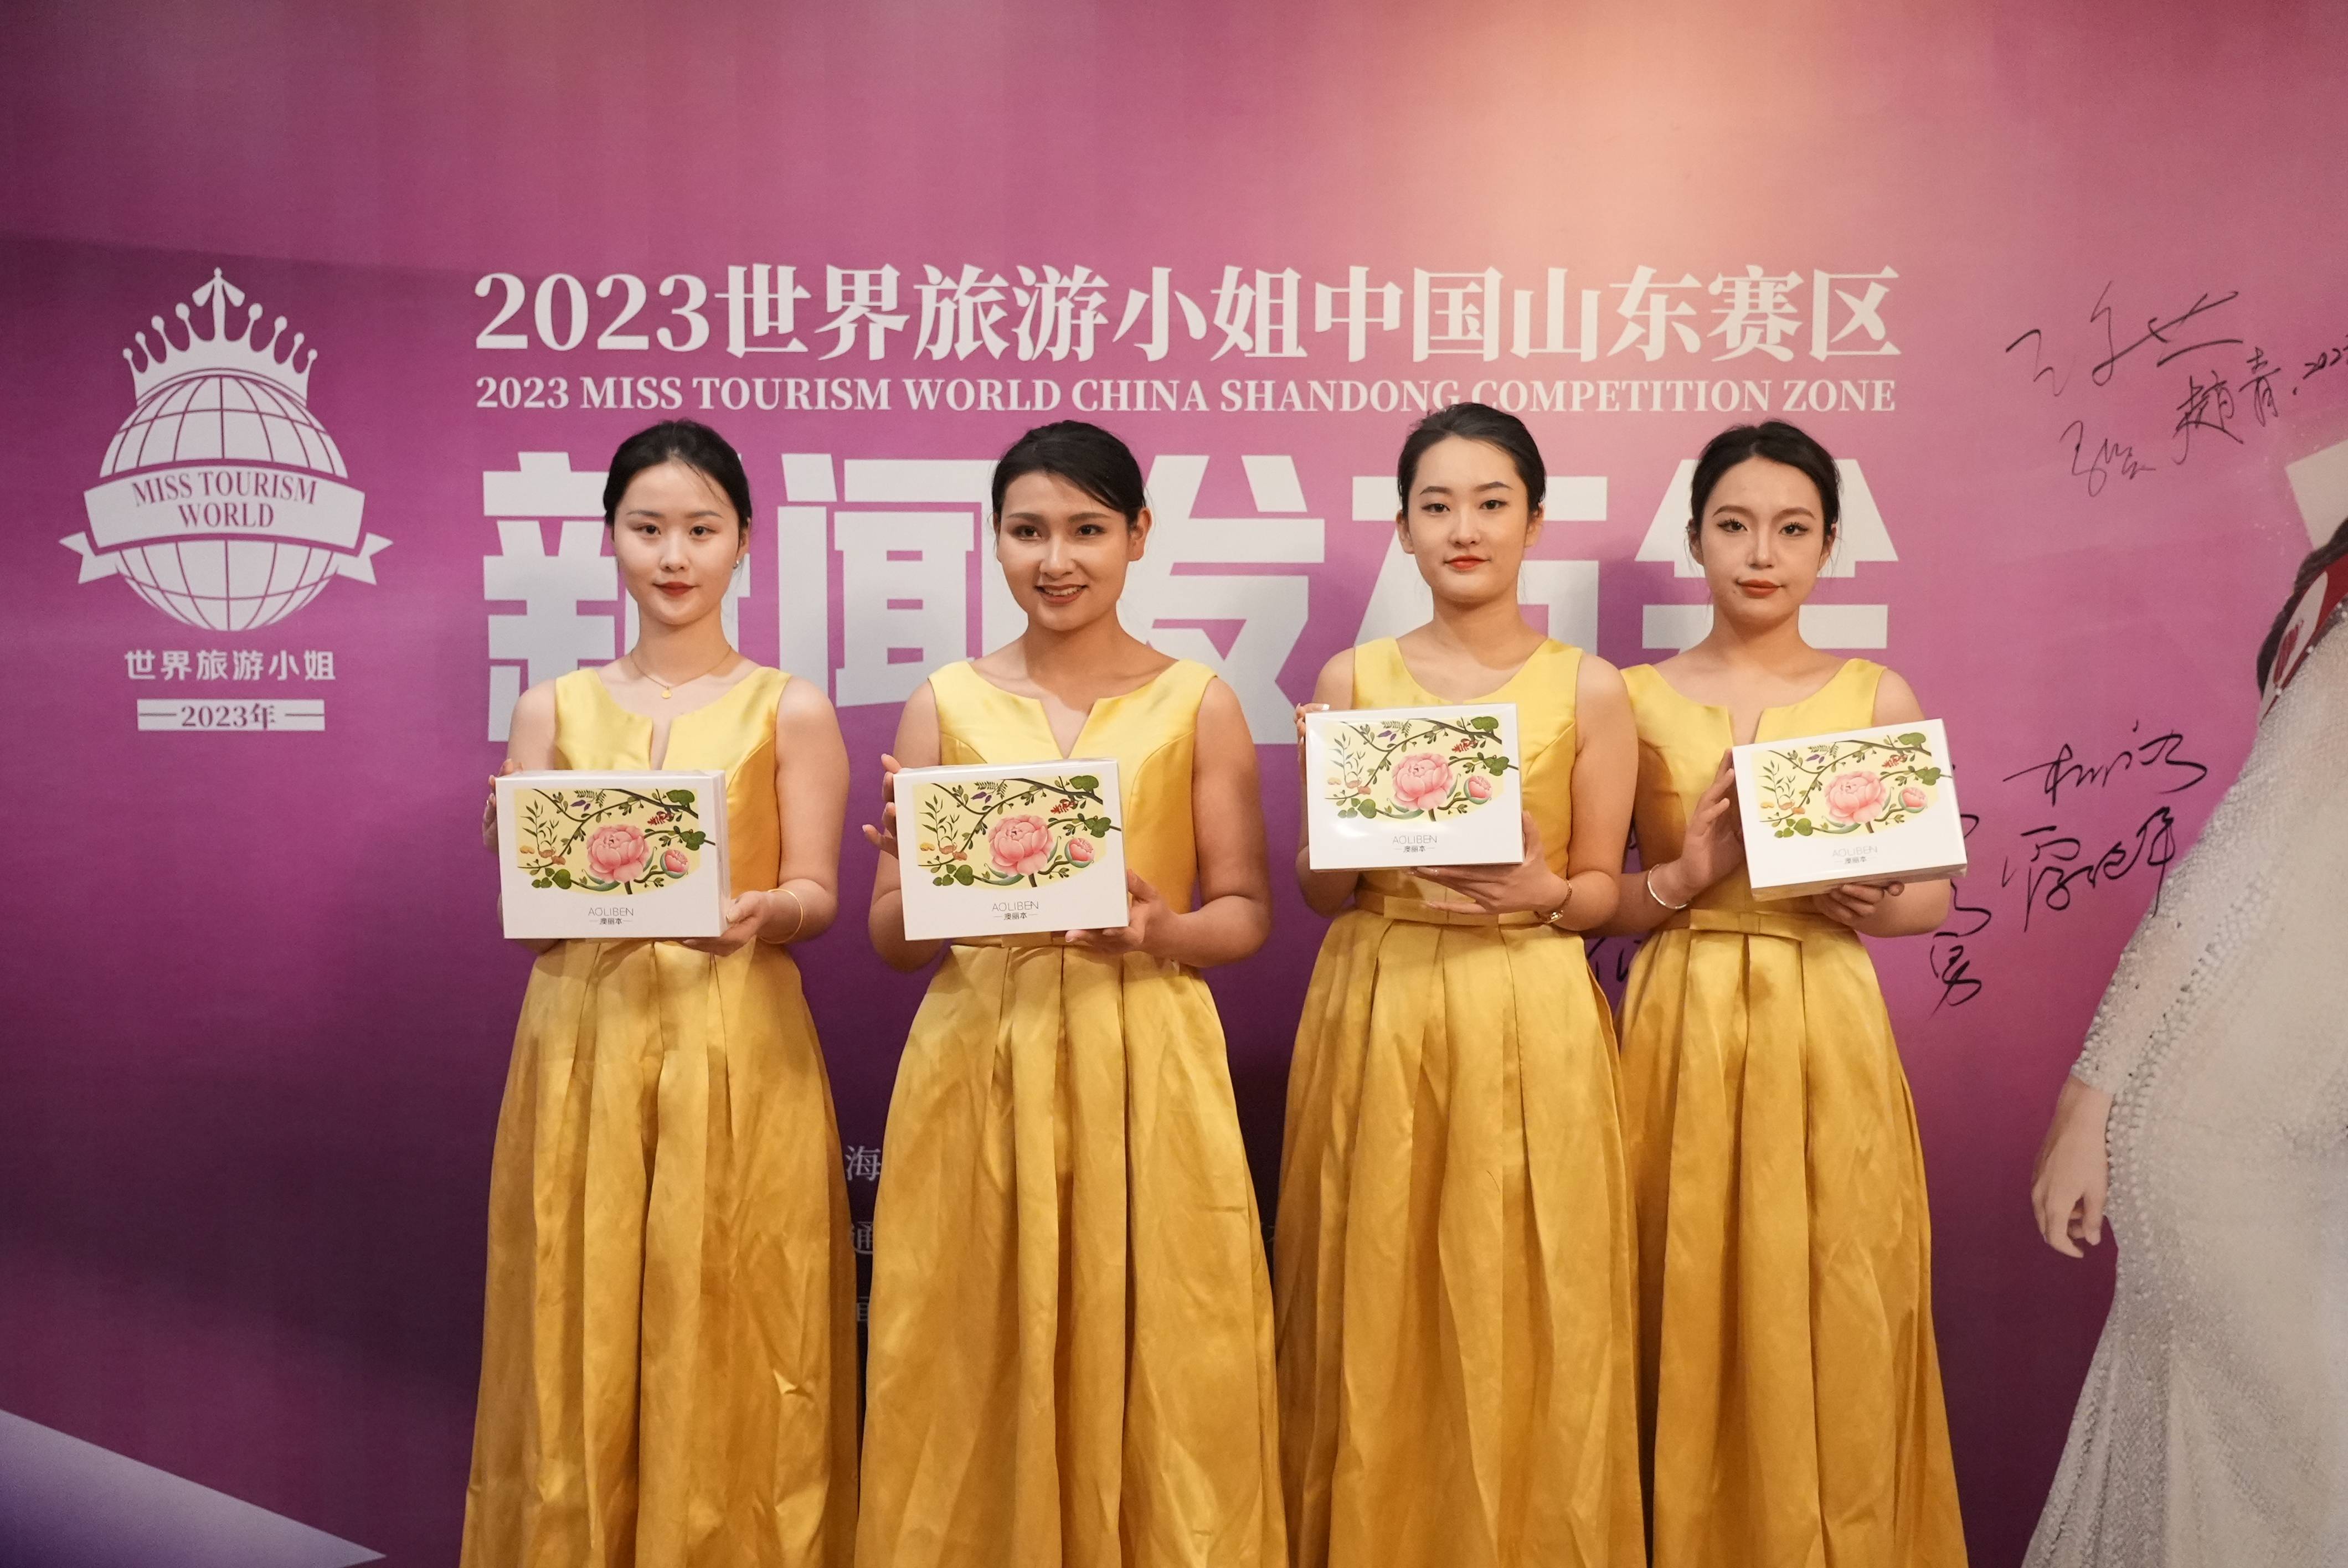 朱氏药业集团赞助出席2023年世界旅游小姐中国山东赛区新闻发